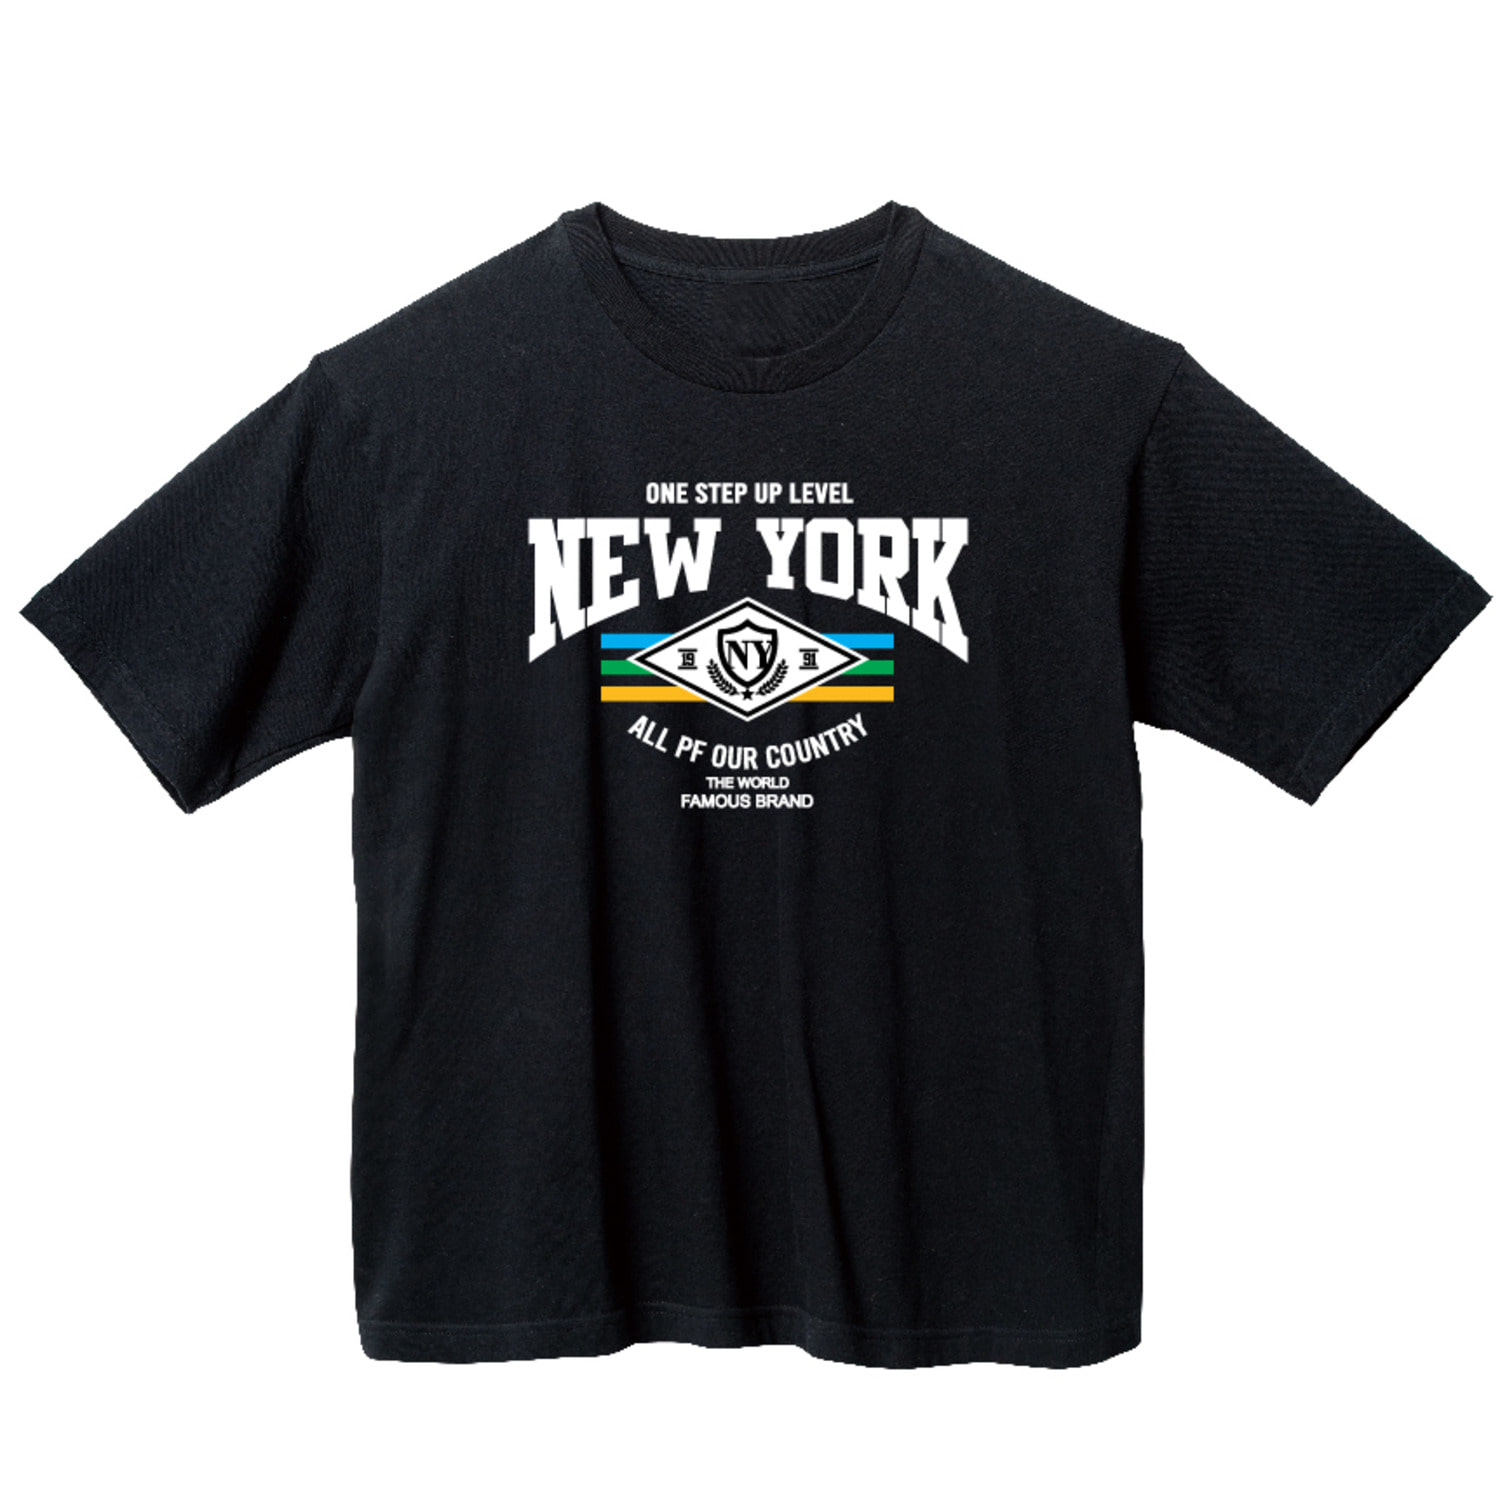 N.Y 여행 그래픽 오버핏 티셔츠 휴가 tour.15